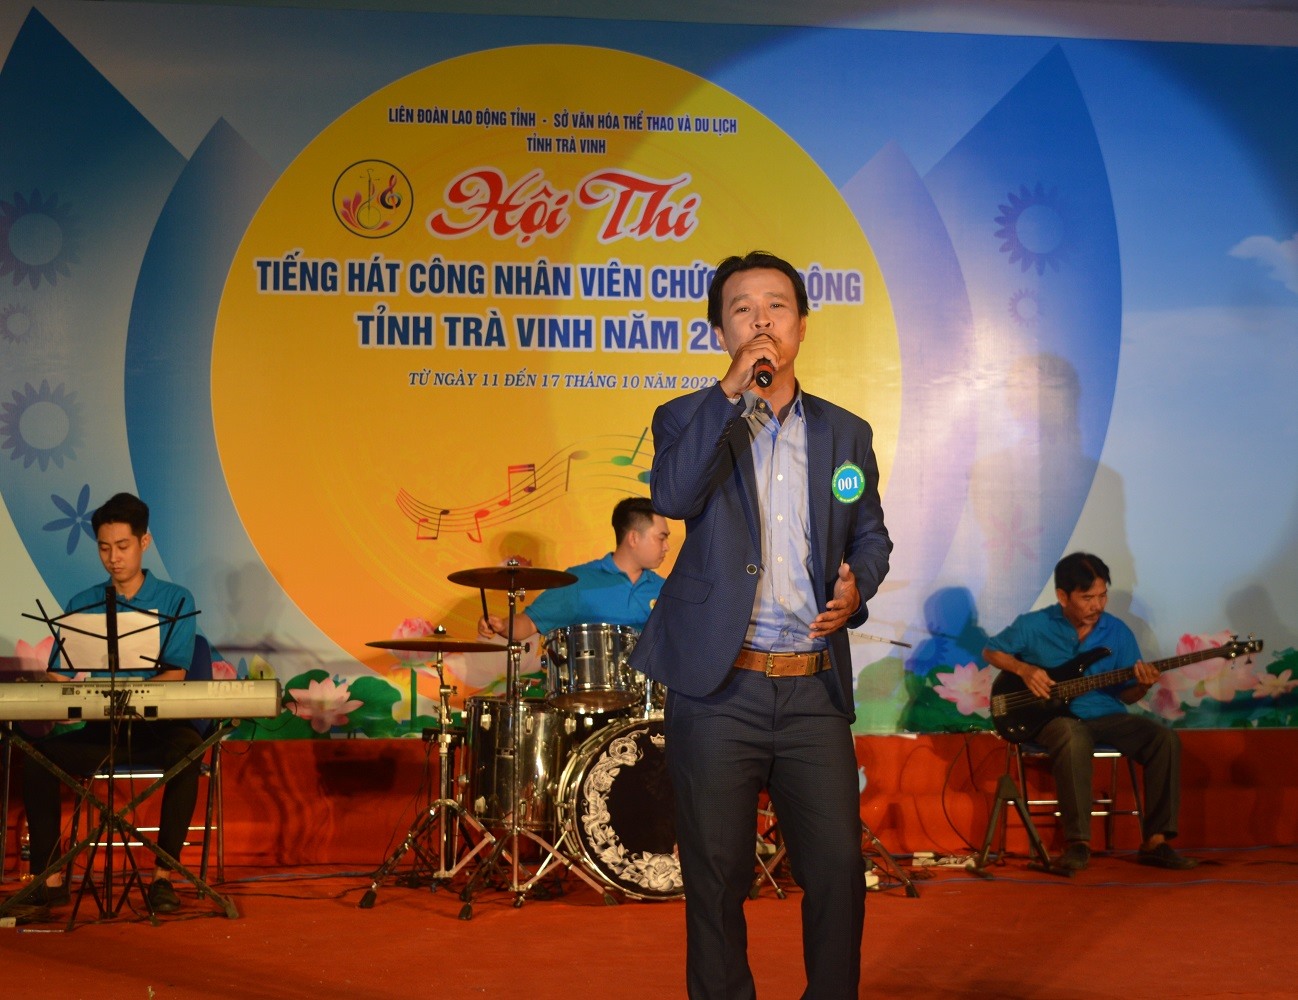 Phần dự thi của thí sinh Trần Bảo Anh, đơn vị LĐLĐ huyện Cầu Kè.